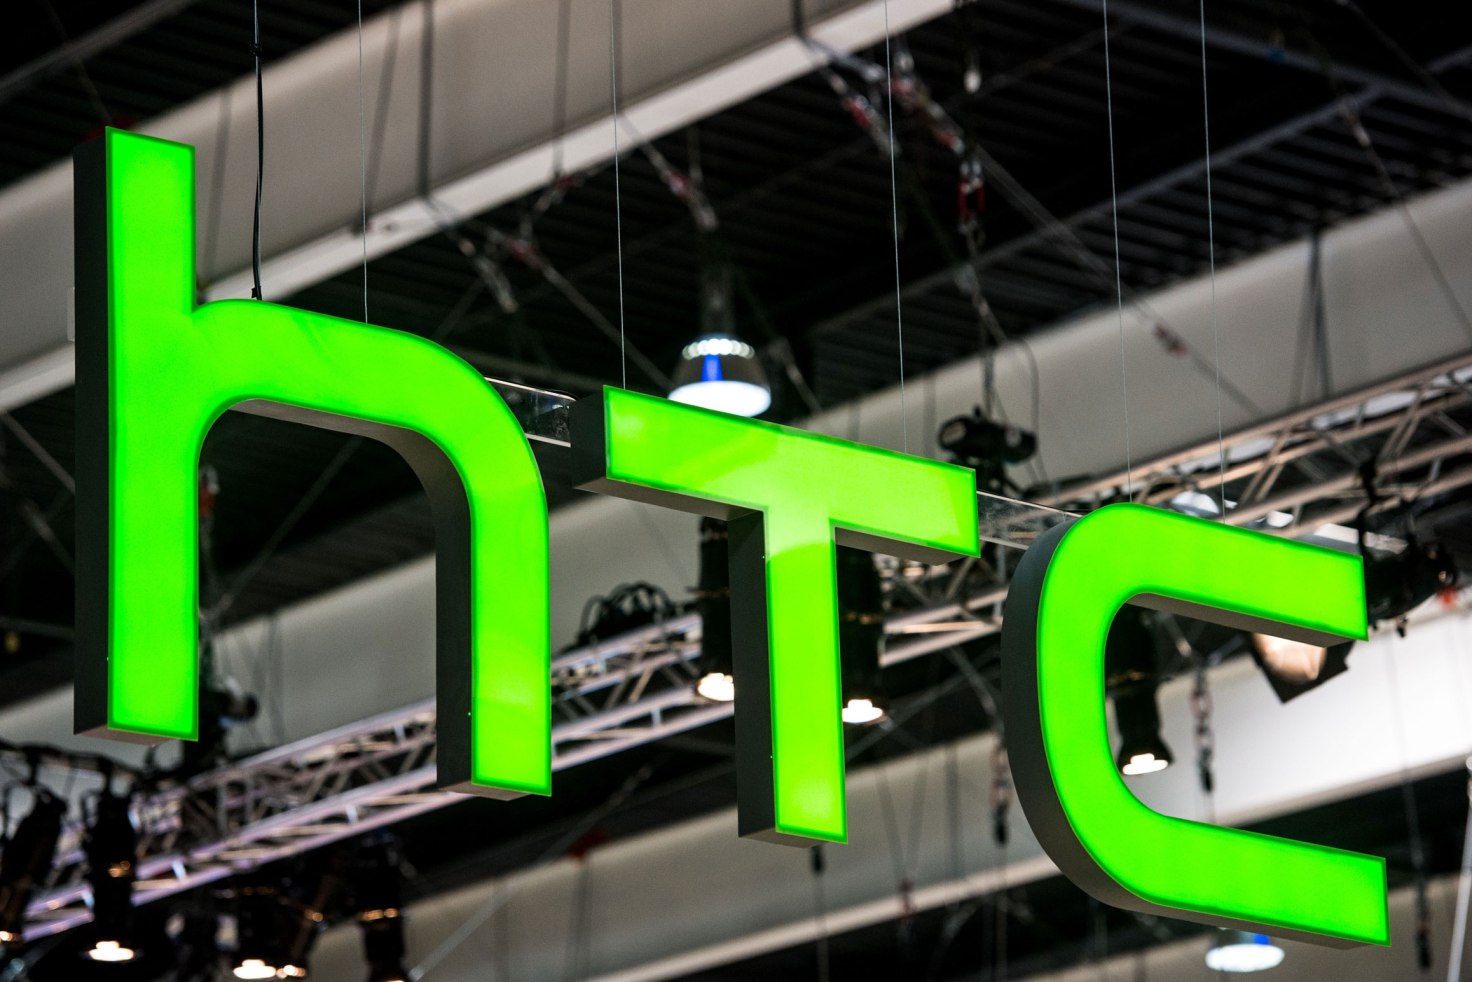 Η Google εξαγοράζει με 1.1δισ δολάρια την ομάδα της HTC που είναι υπεύθυνη για τα Pixel smartphones